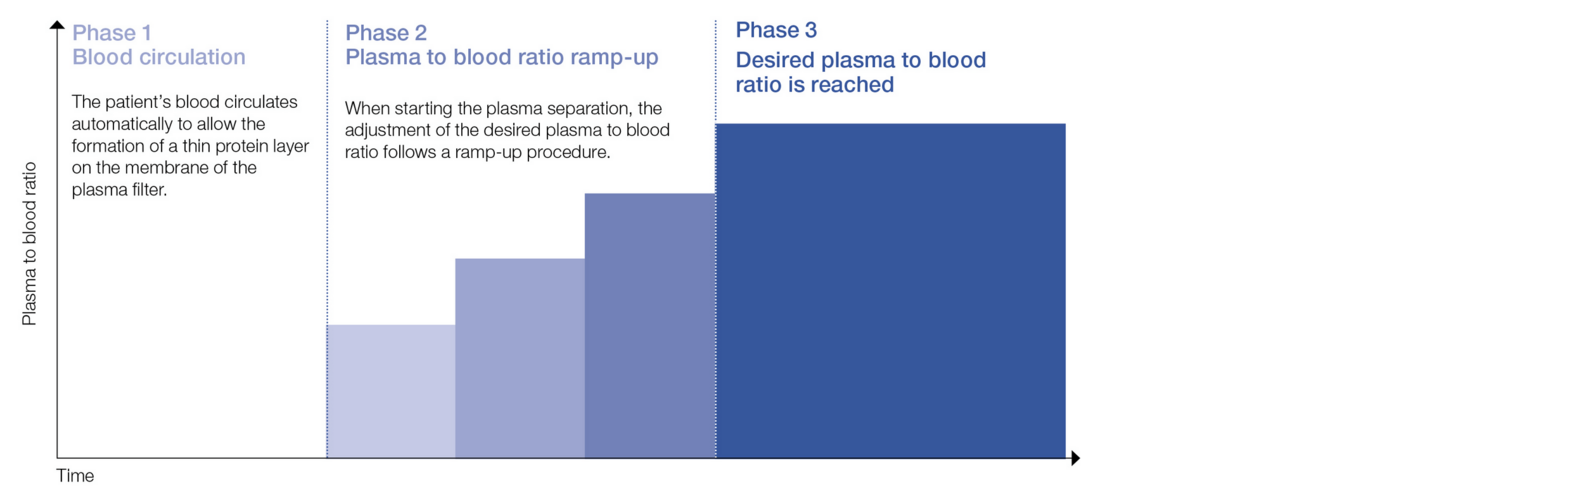 Hochfahren des Plasma-/Blutverhältnisses